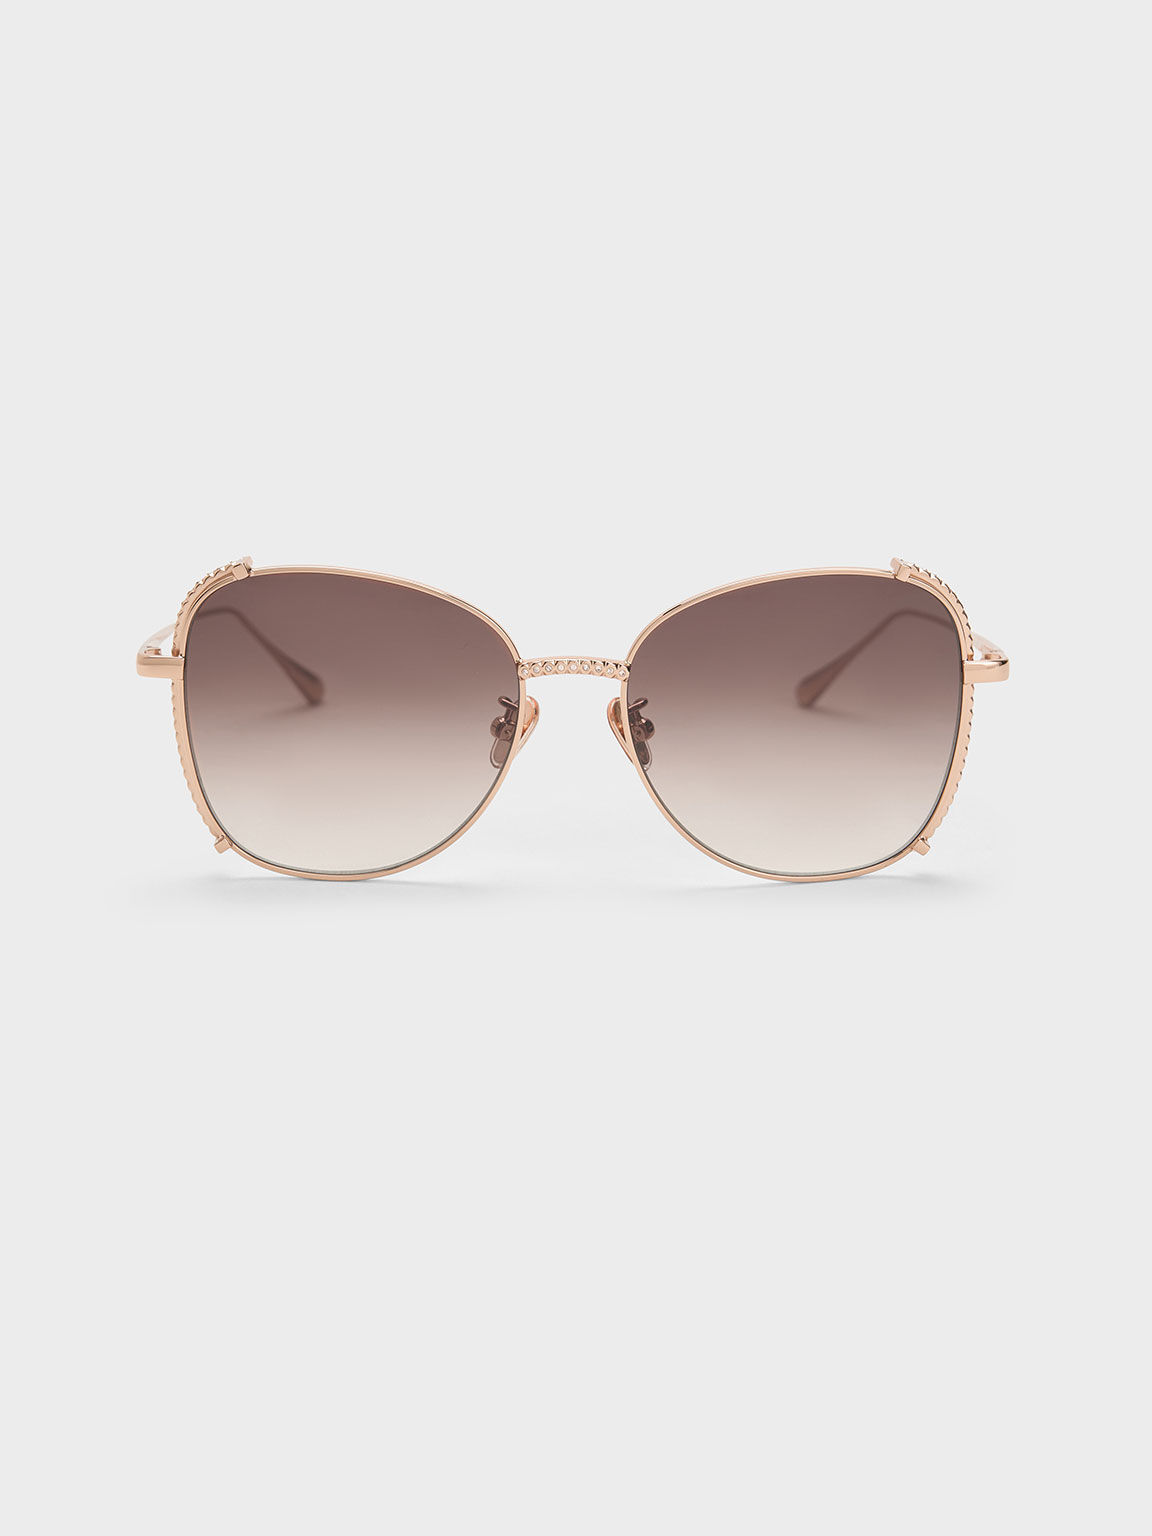 Embellished Half-Frame Butterfly Sunglasses, Rose Gold, hi-res